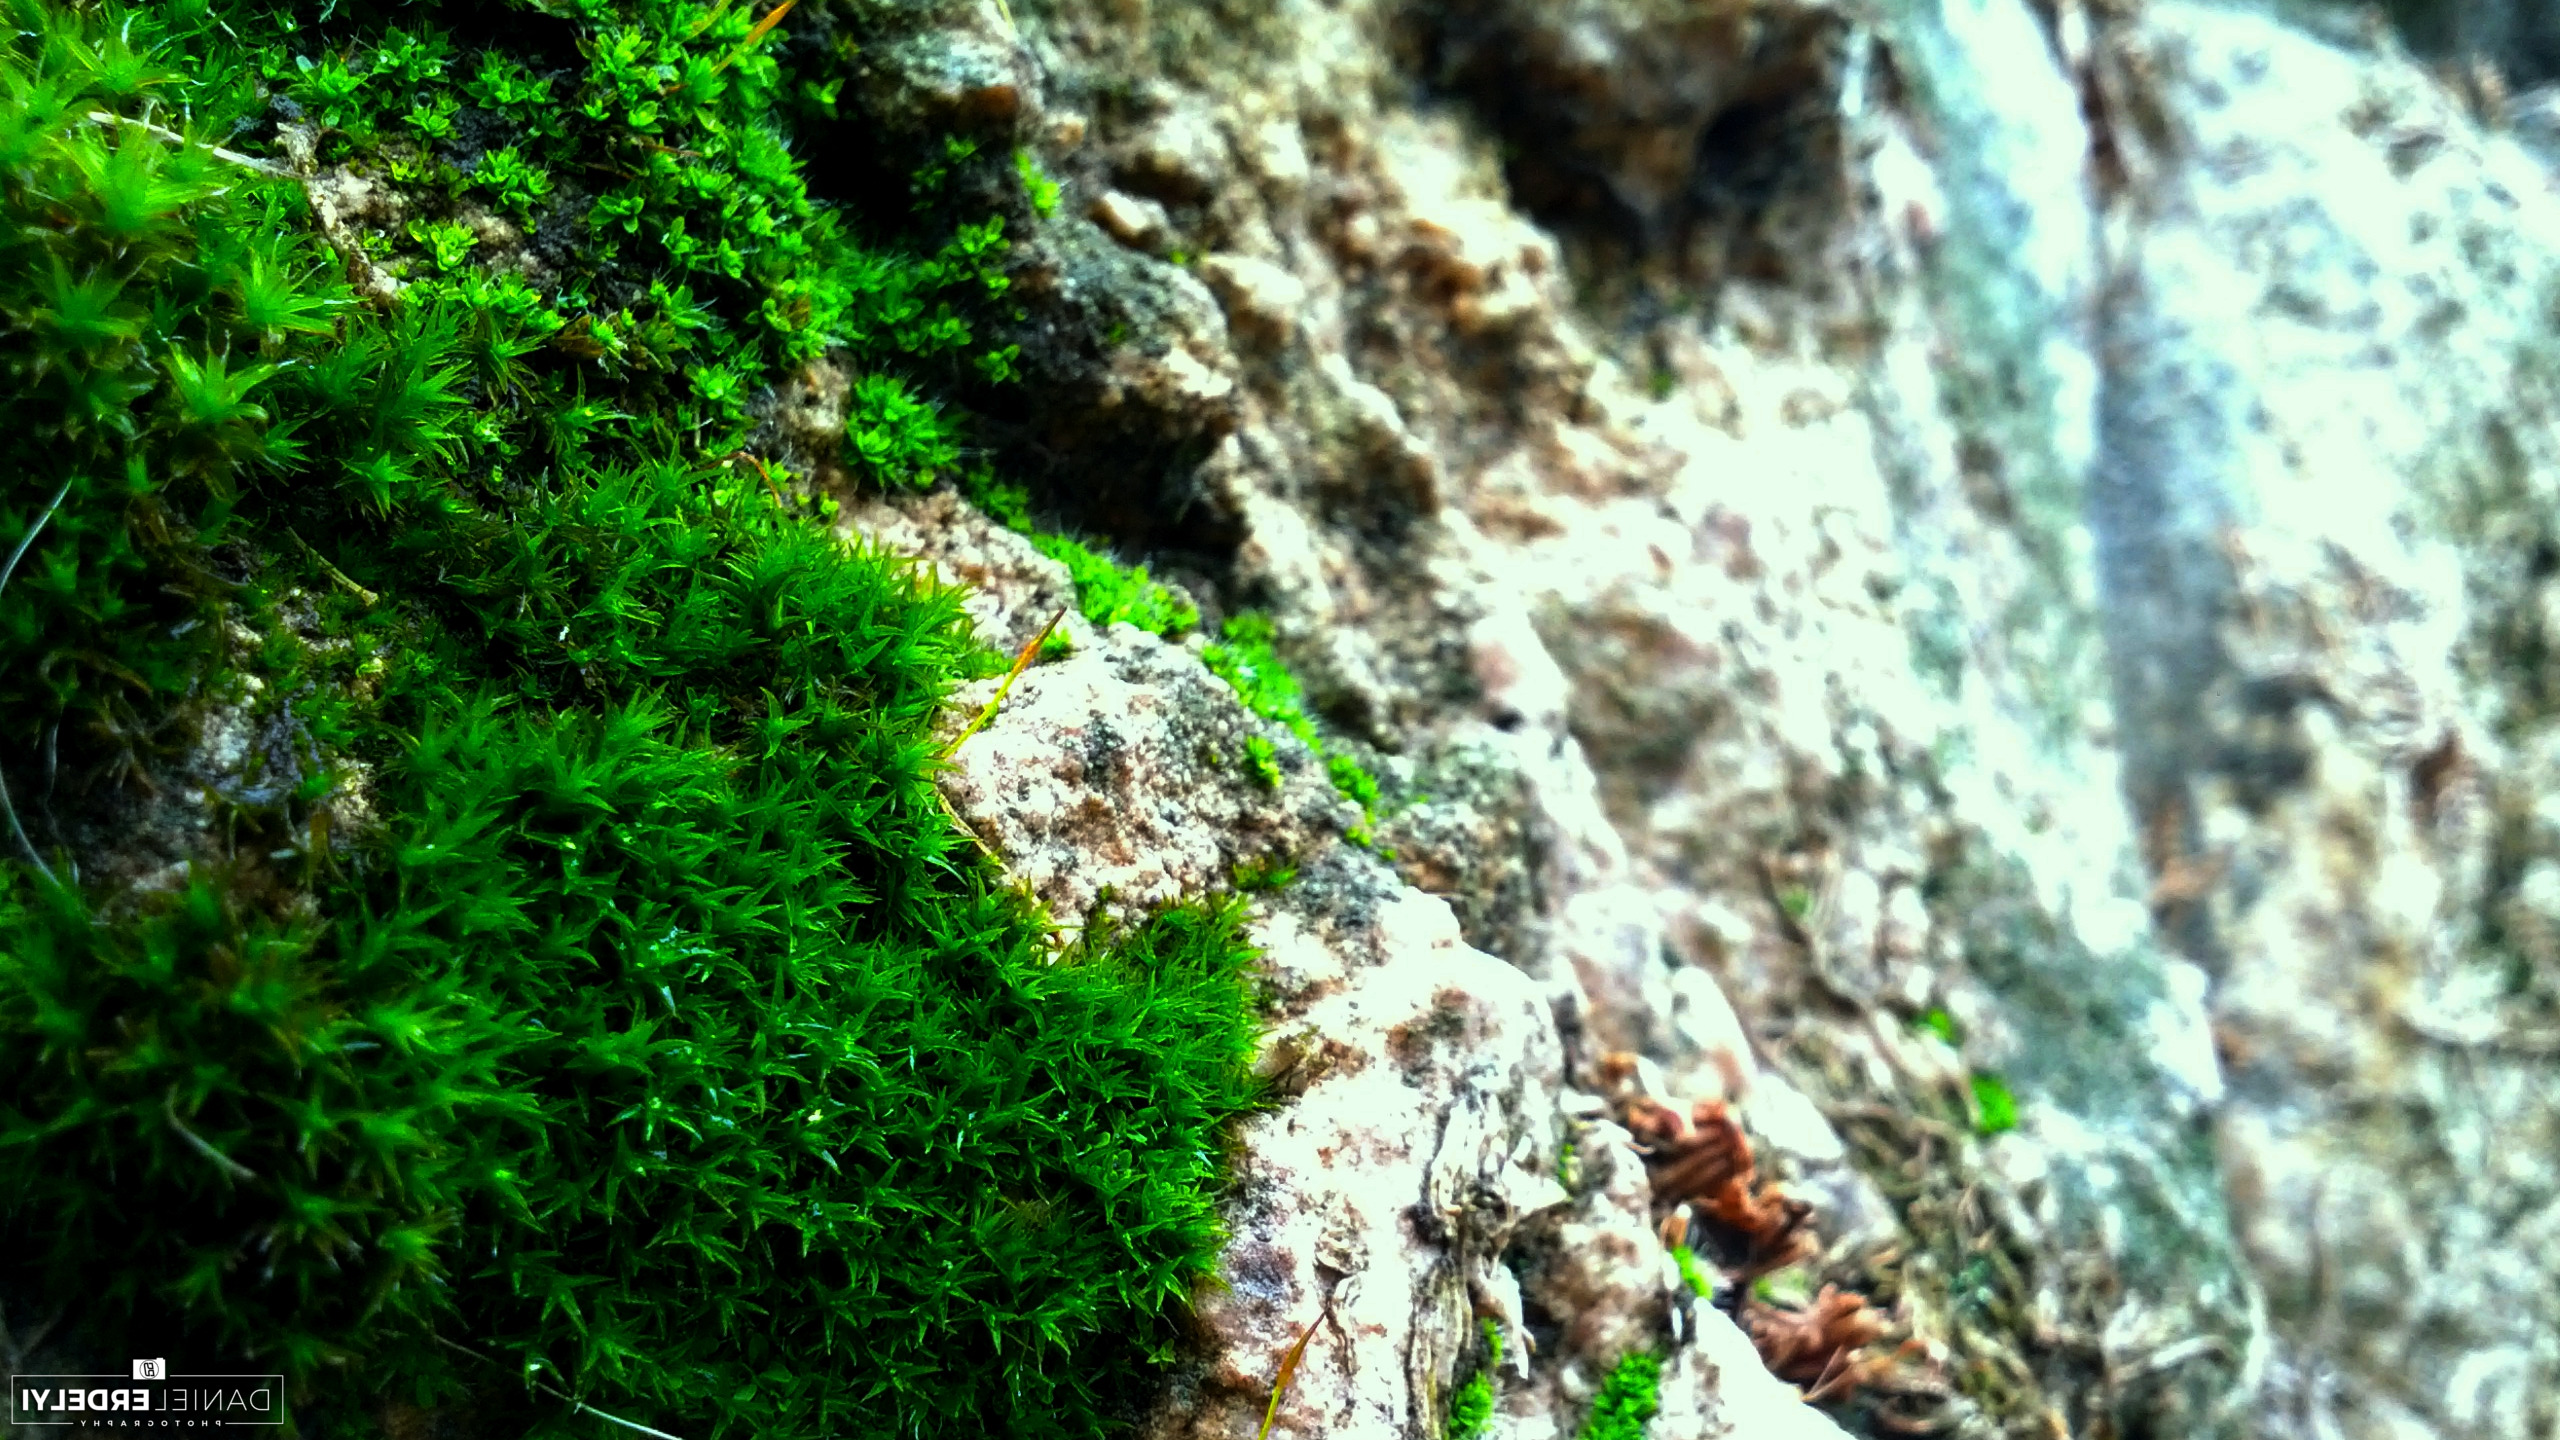 nature, Moss, Photography, Green, Blue, Rock Wallpaper